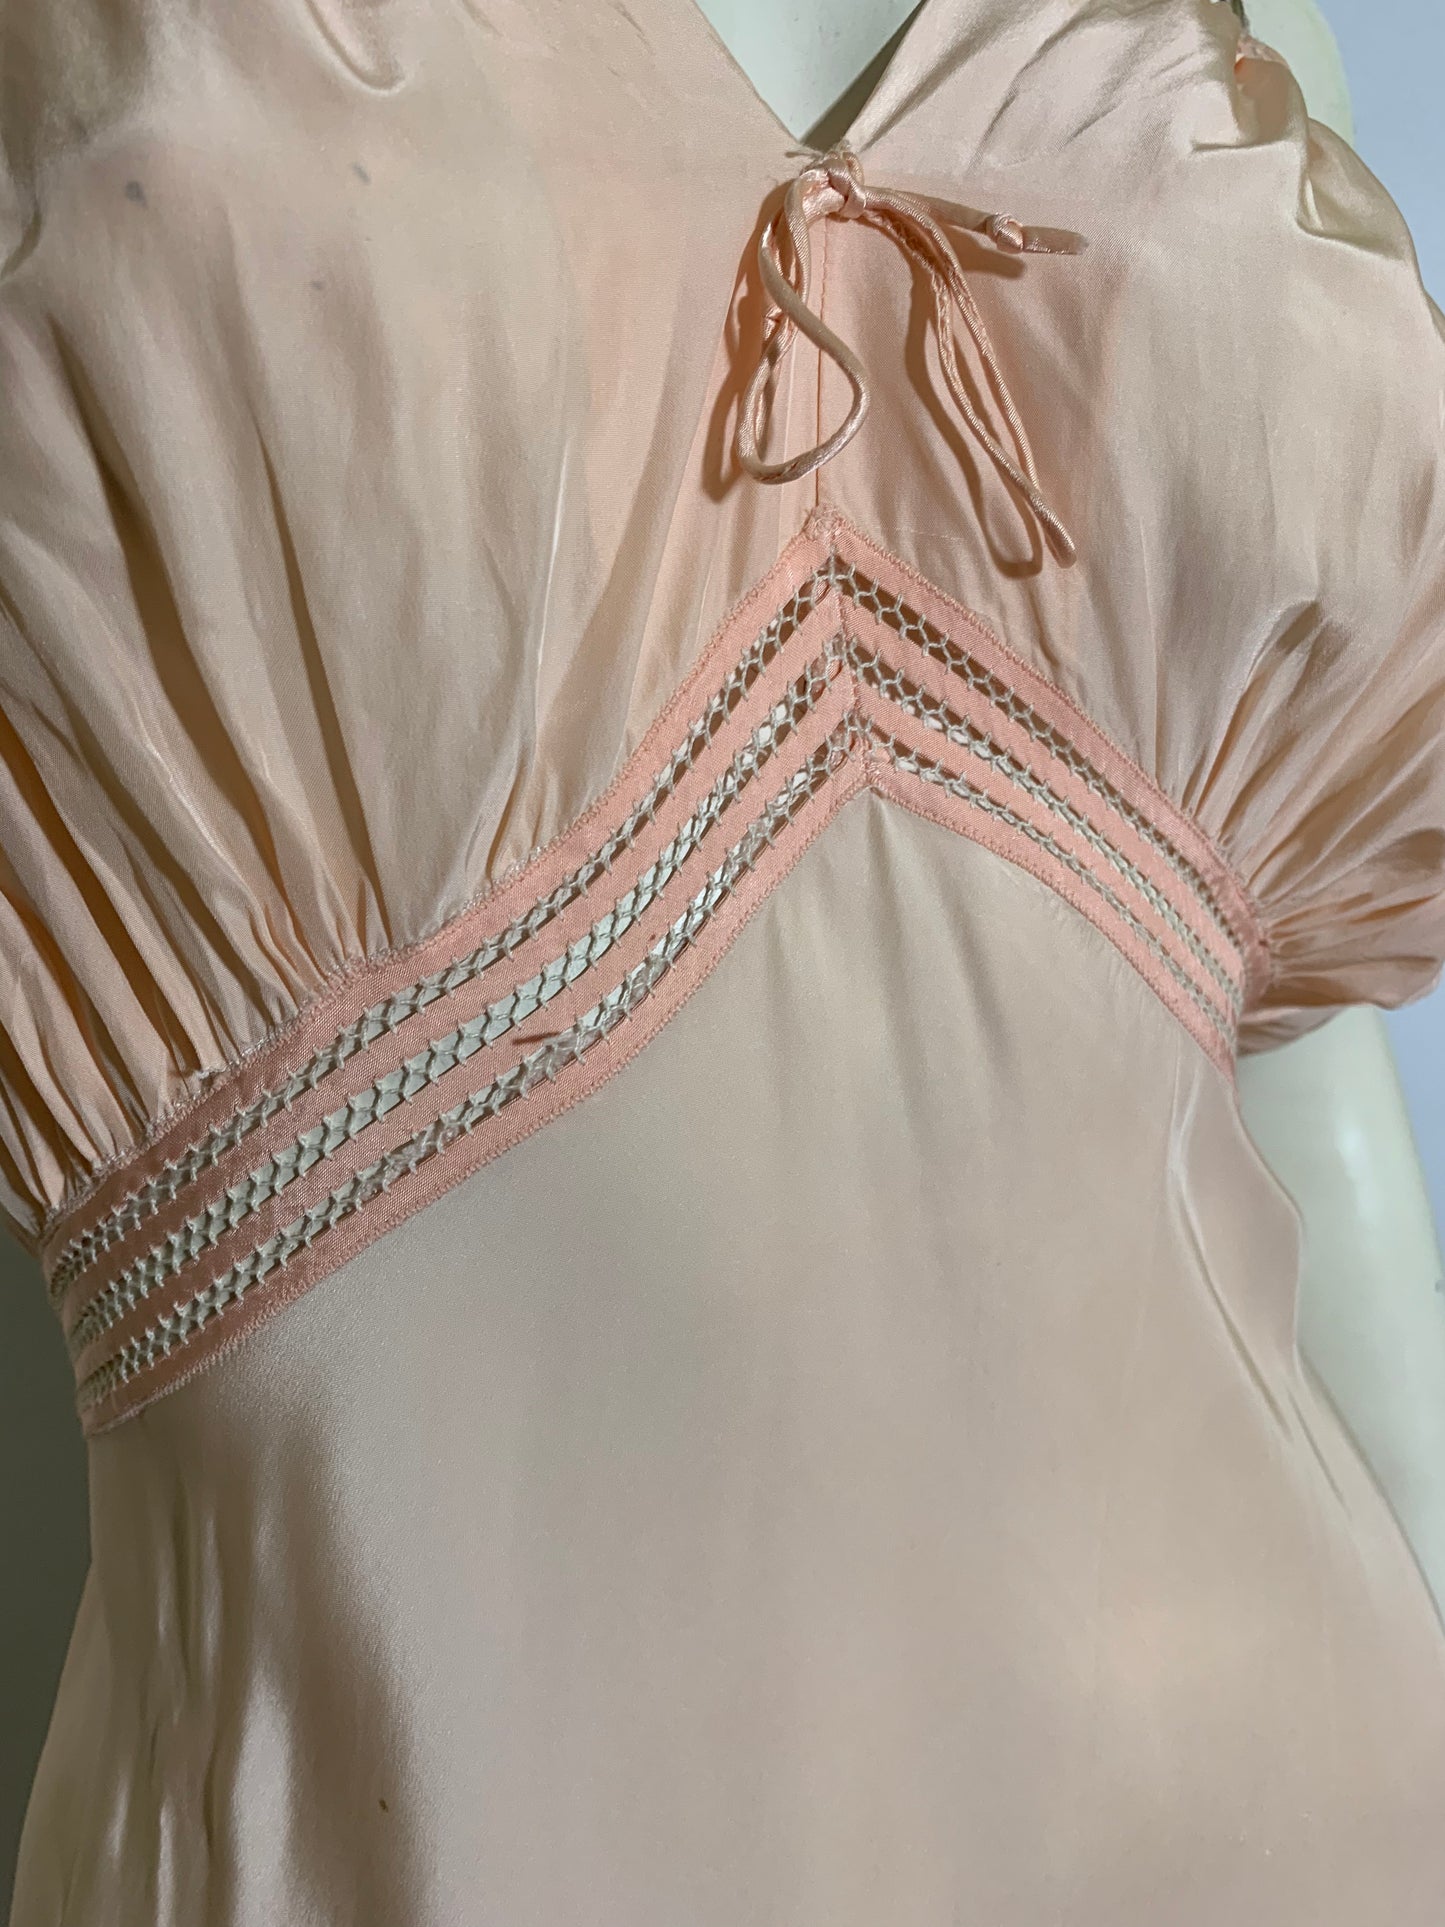 Peach Silk Bow Trimmed Bias Cut Nightgown circa 1930s